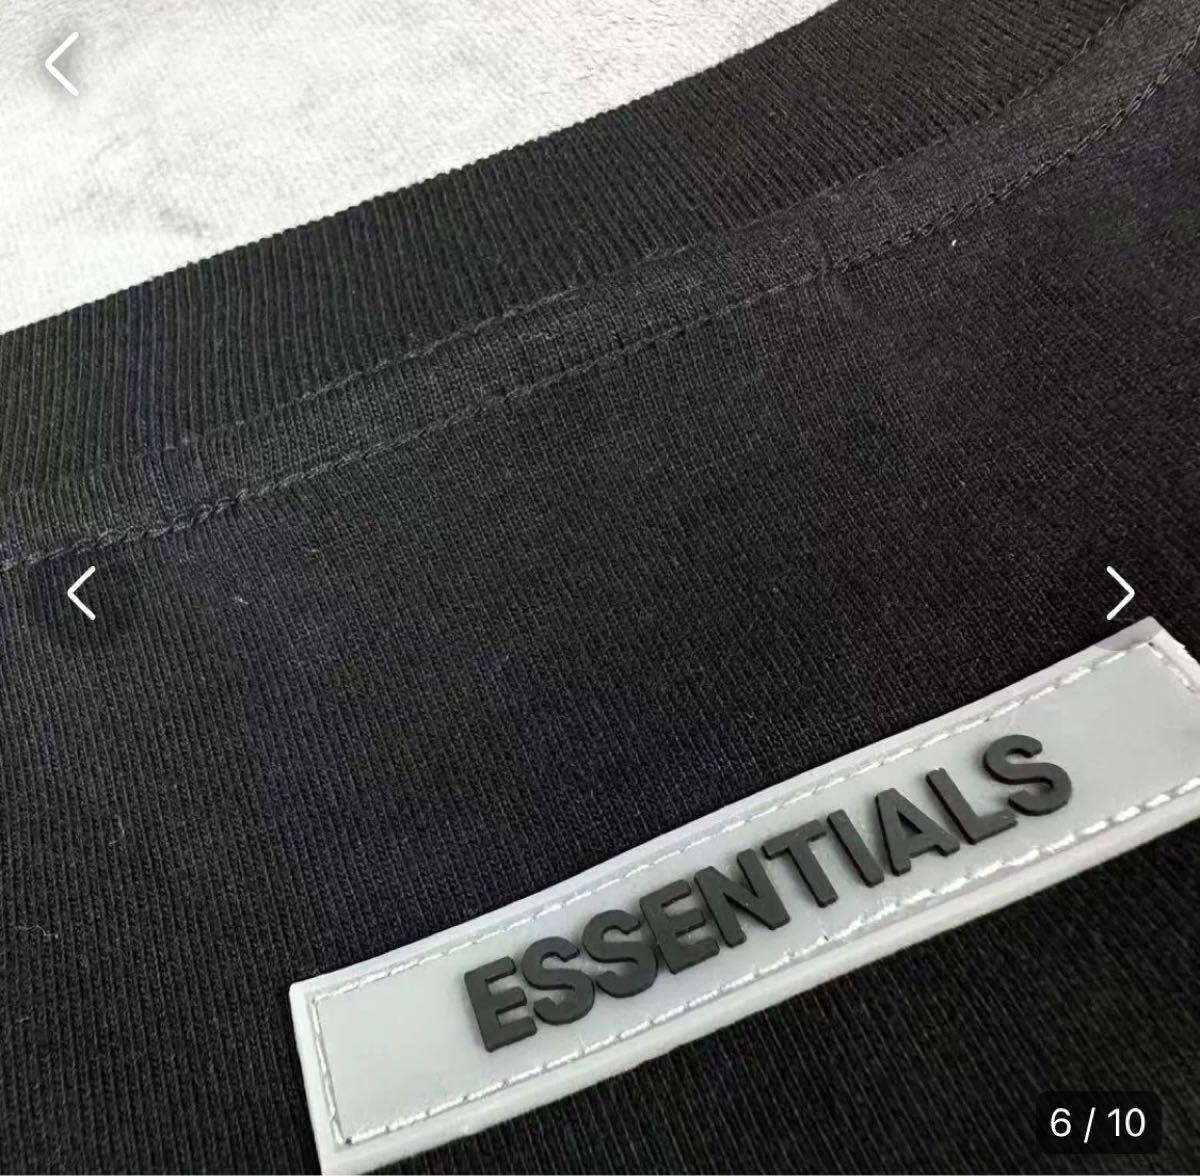 新品FOG Essentials エッセンシャルズ Tシャツ ブラック Sサイズ 